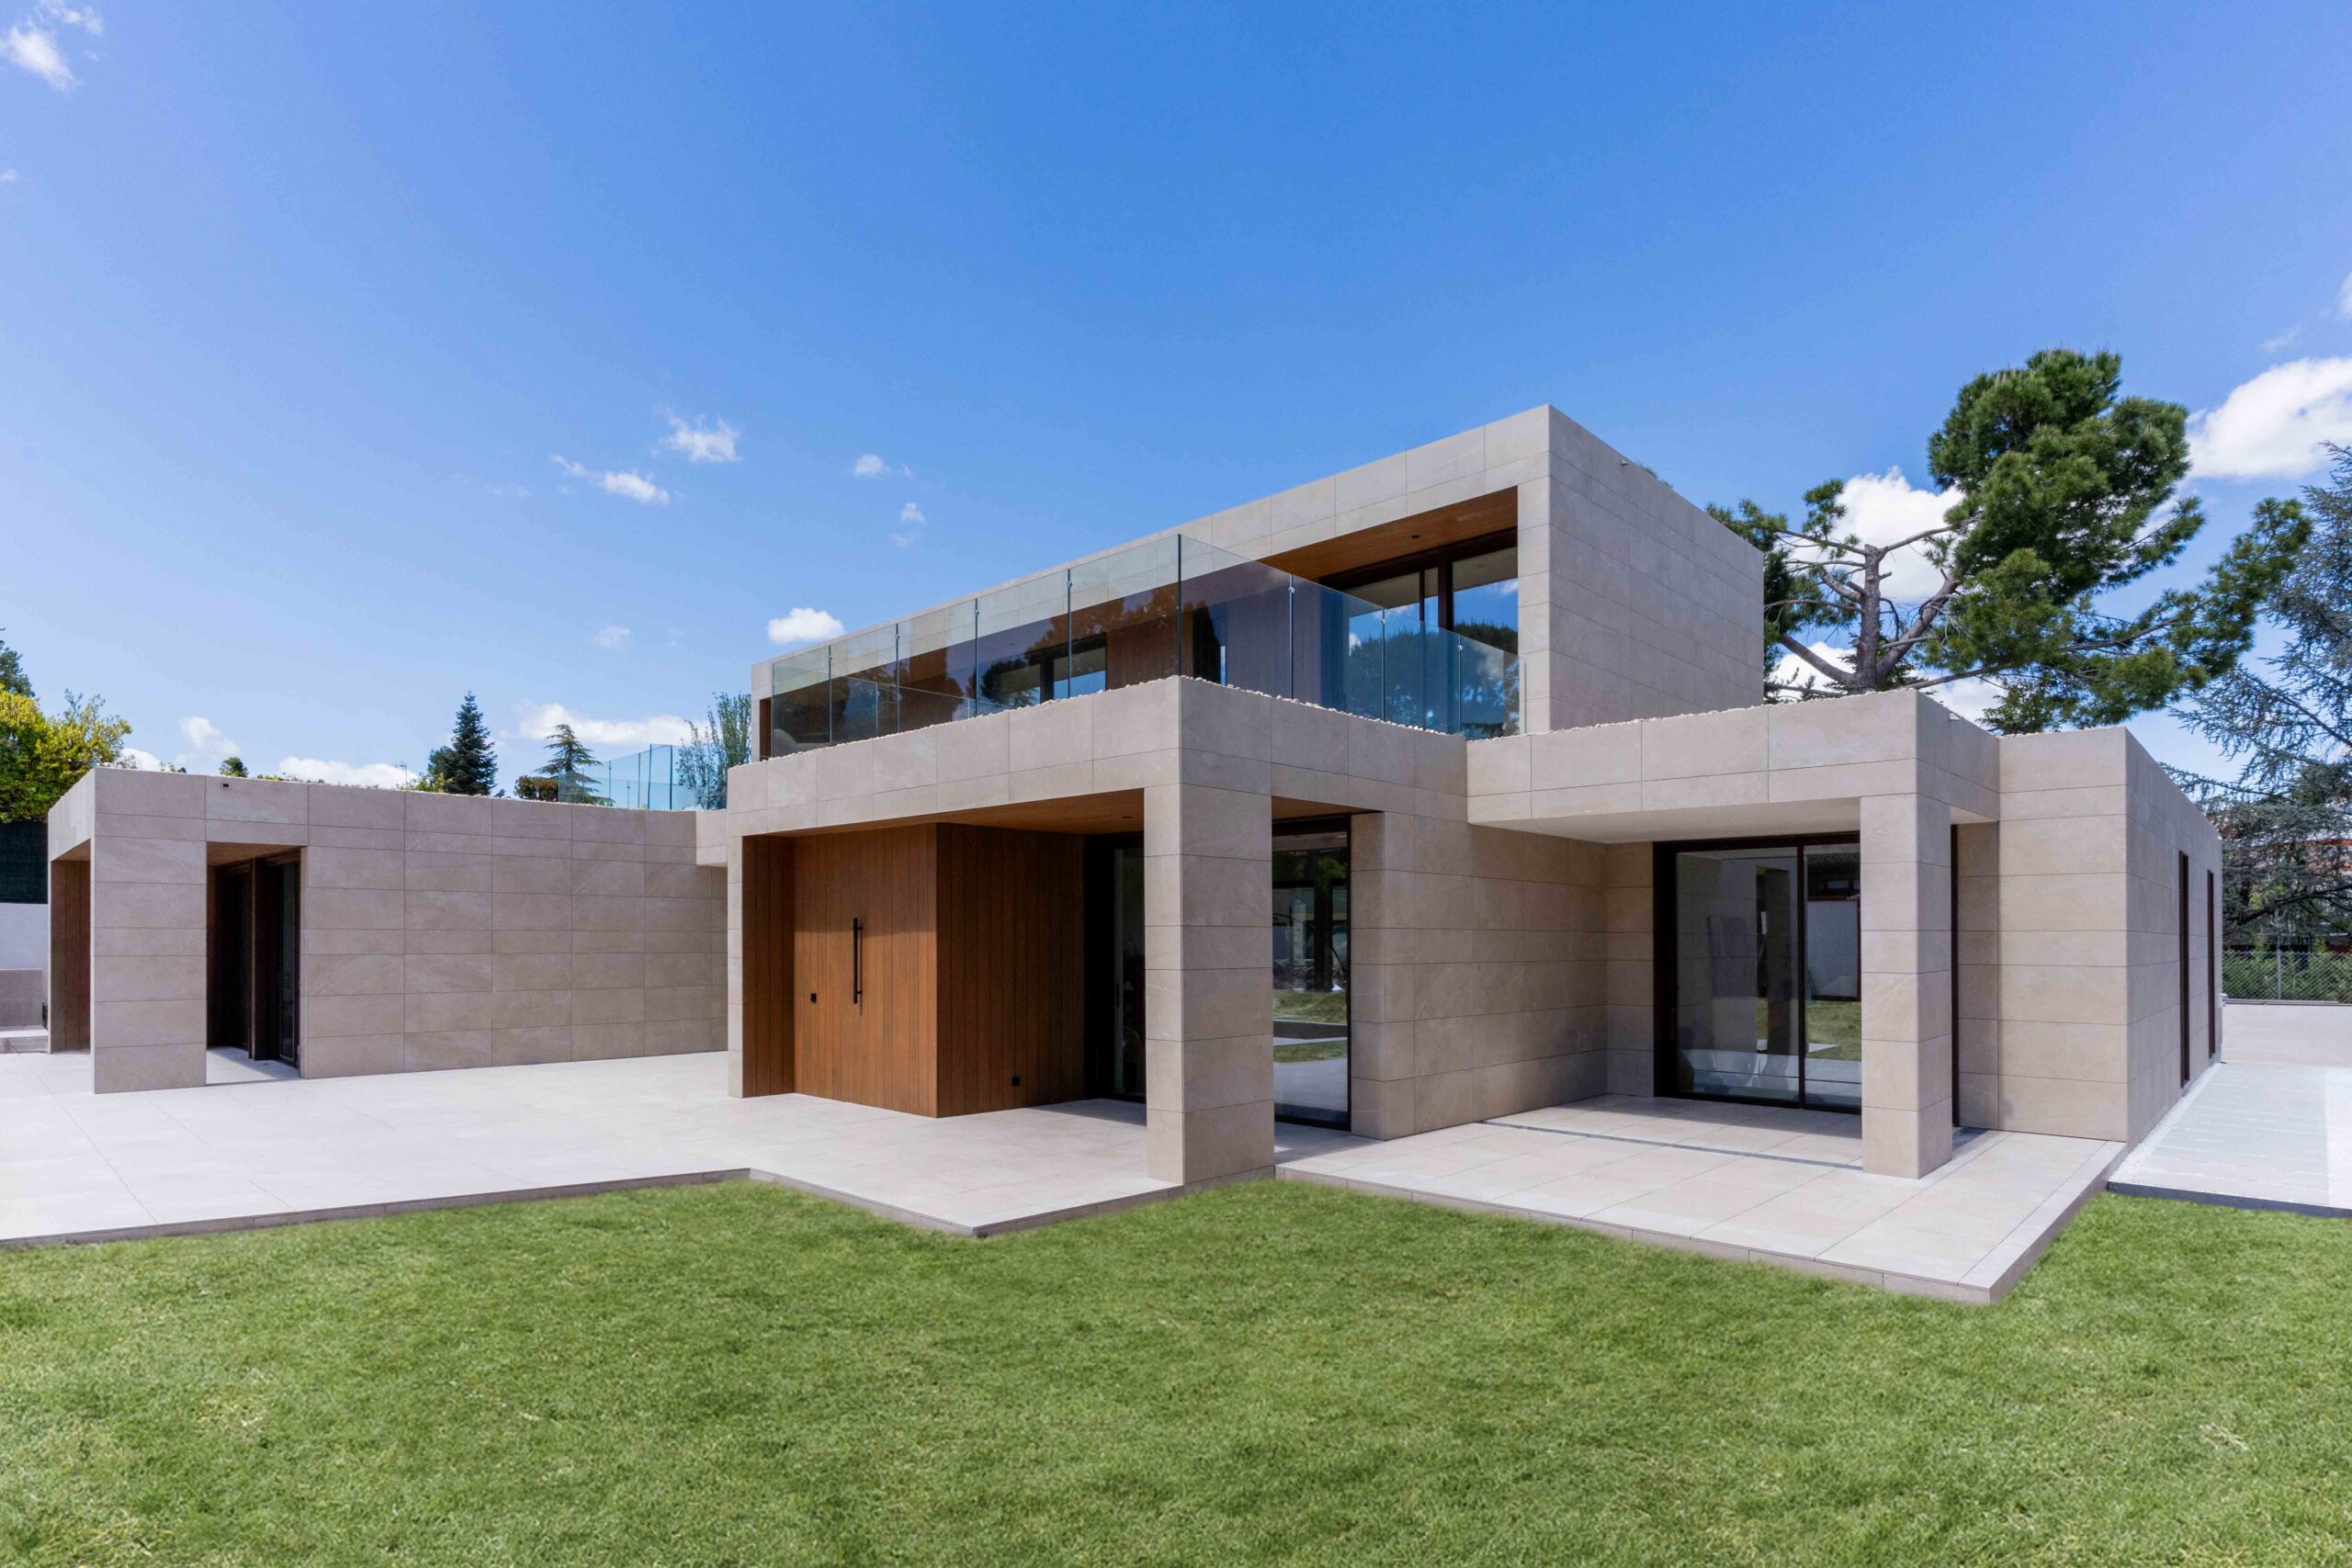 Fassade mit würfelförmigen Volumen, Seitenansicht mit Porzellanmaterialien, Kunstrasen und technischem Holz im Außenbereich.